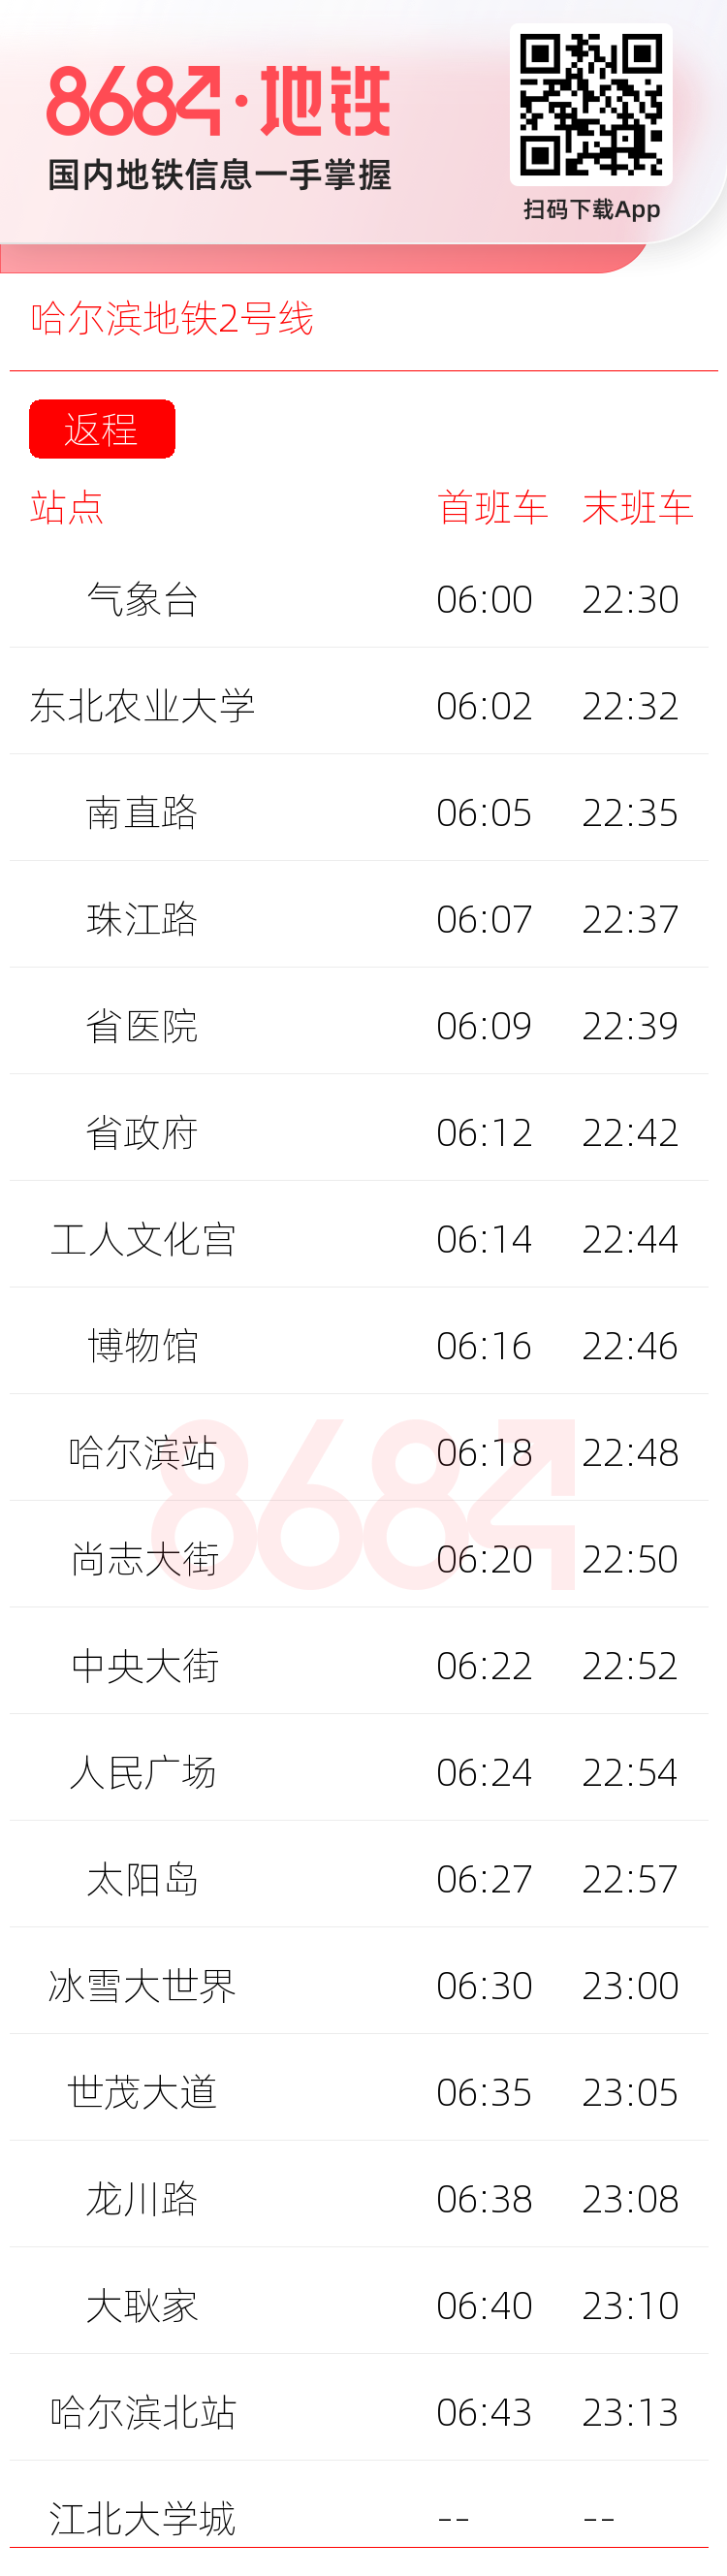 哈尔滨地铁2号线运营时间表